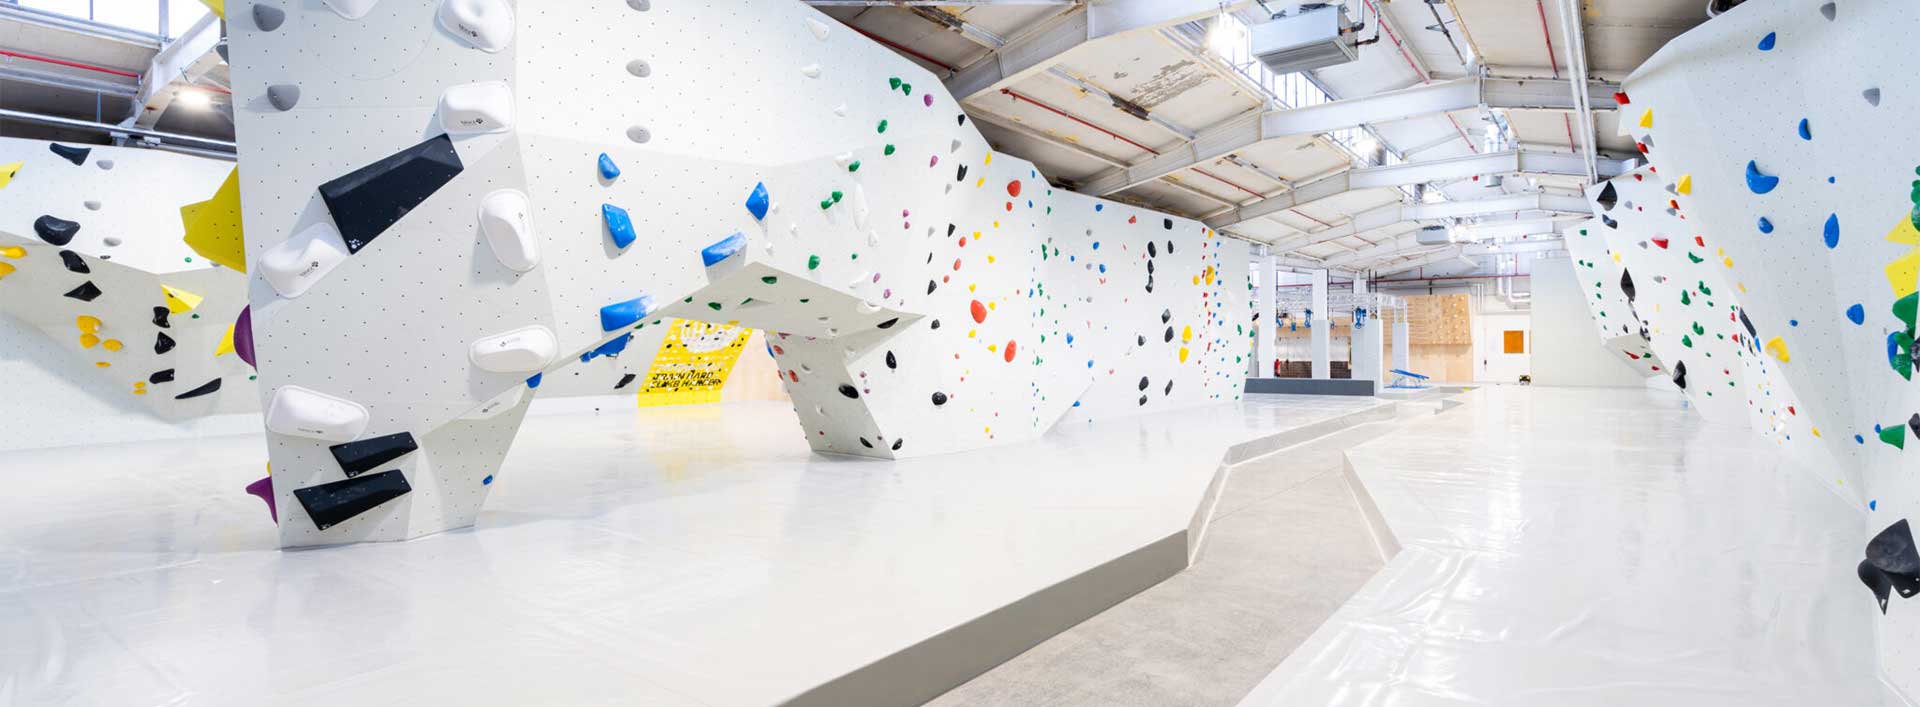 Eine Überhang Boulderwand mit weißen Wänden sowie Fallschutzmatten und bunten Griffen, von 3D Sportanlagen designt und gebaut.